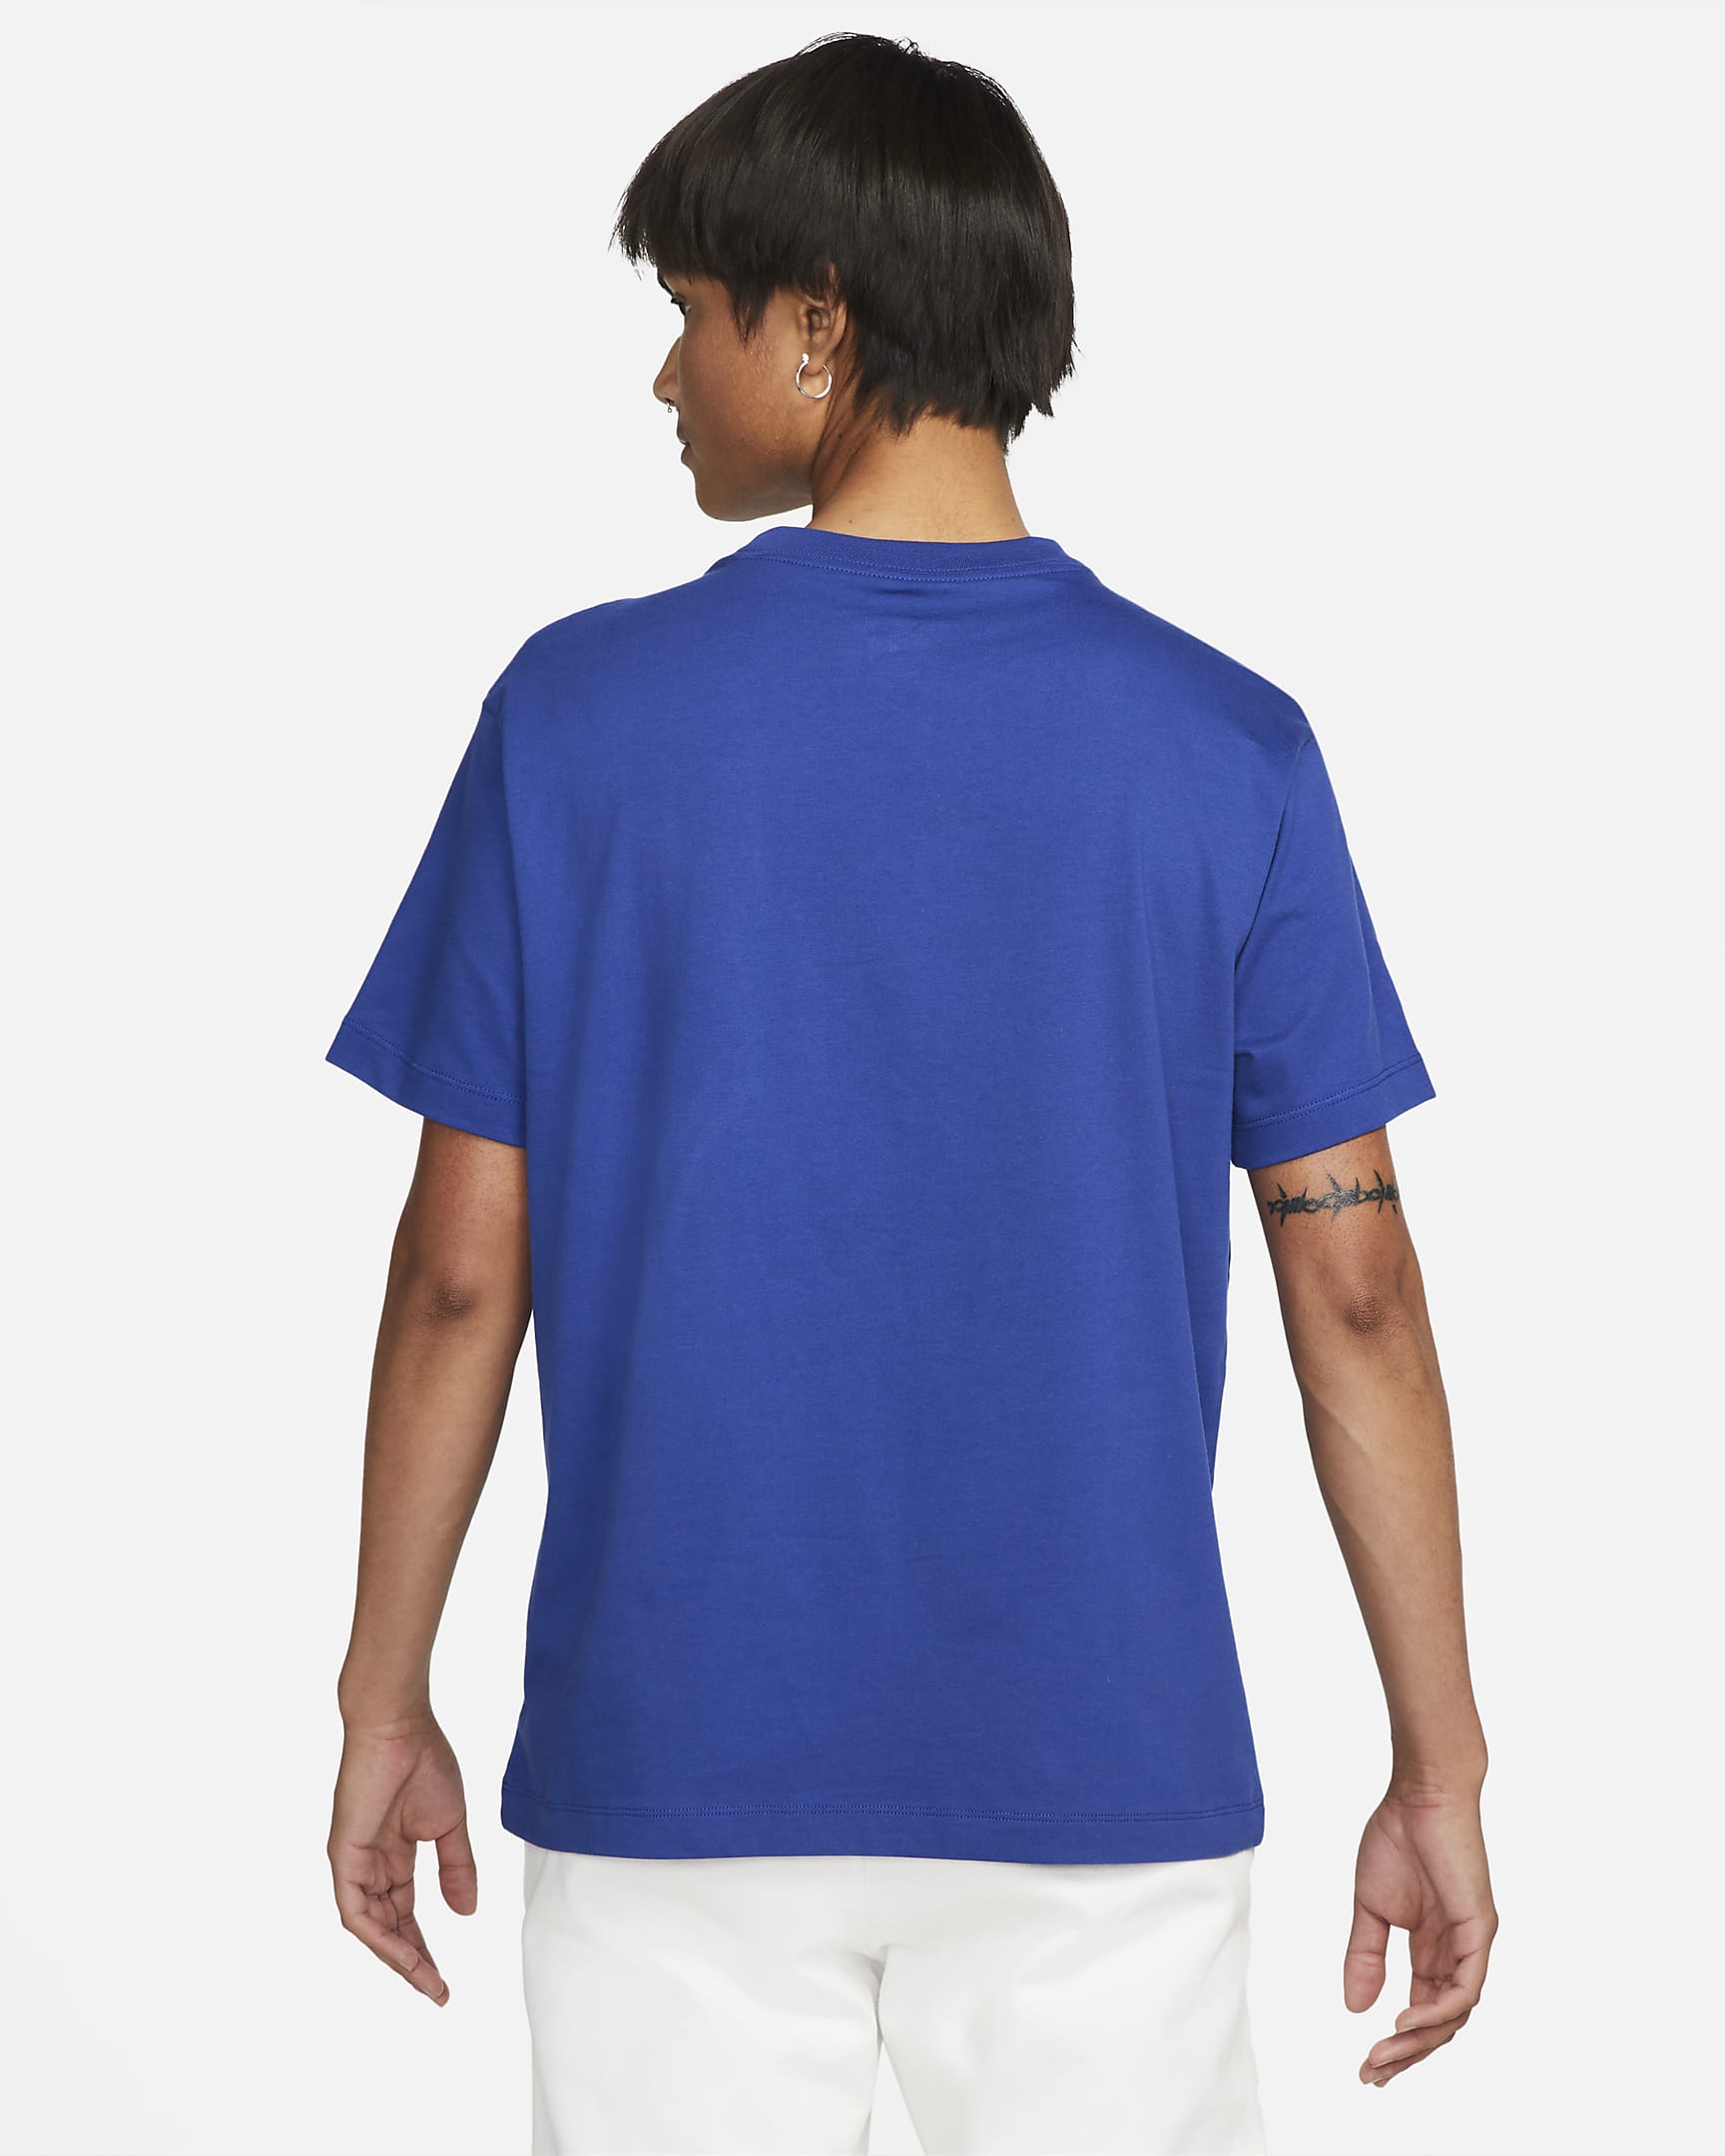 Chelsea F.C. Crest Women's Football T-Shirt. Nike SK